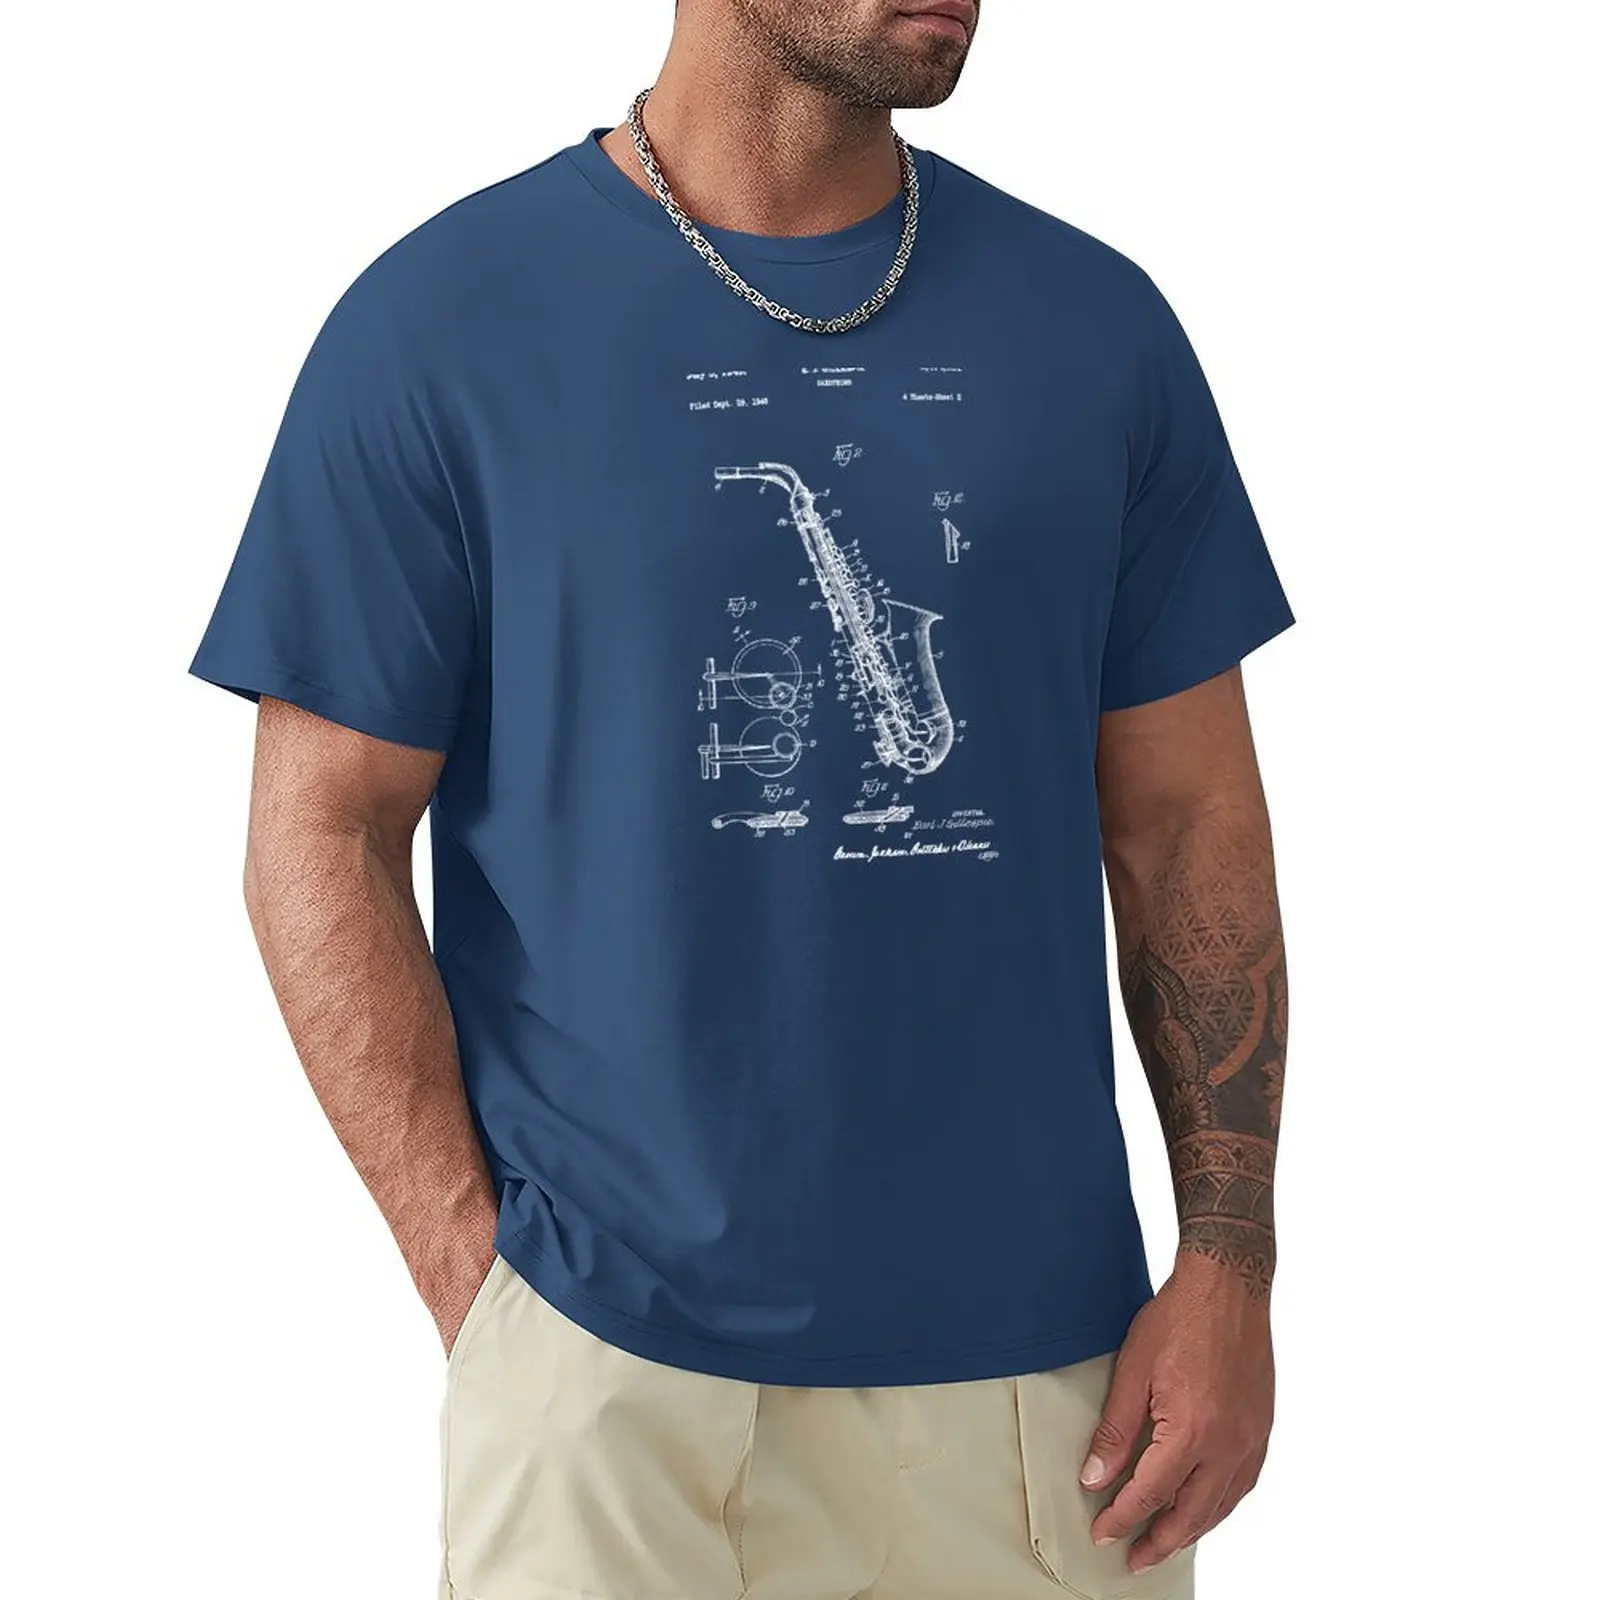 Футболка с патентом на саксофон 1949 года, милые топы, футболки для мальчиков, винтажная одежда, мужская футболка